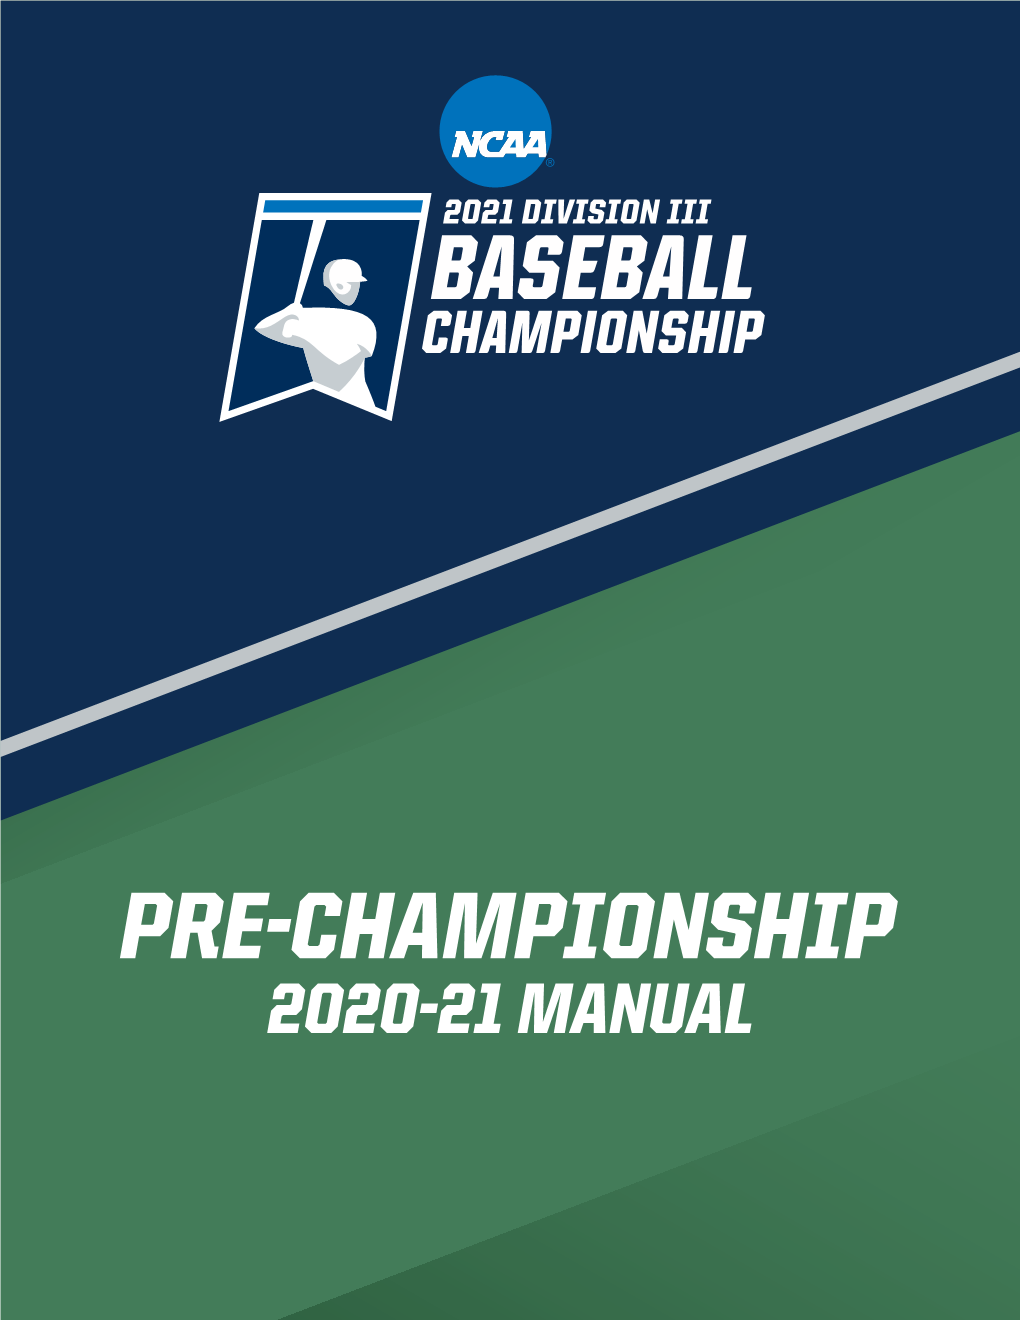 2020-21 MANUAL Division III Baseball